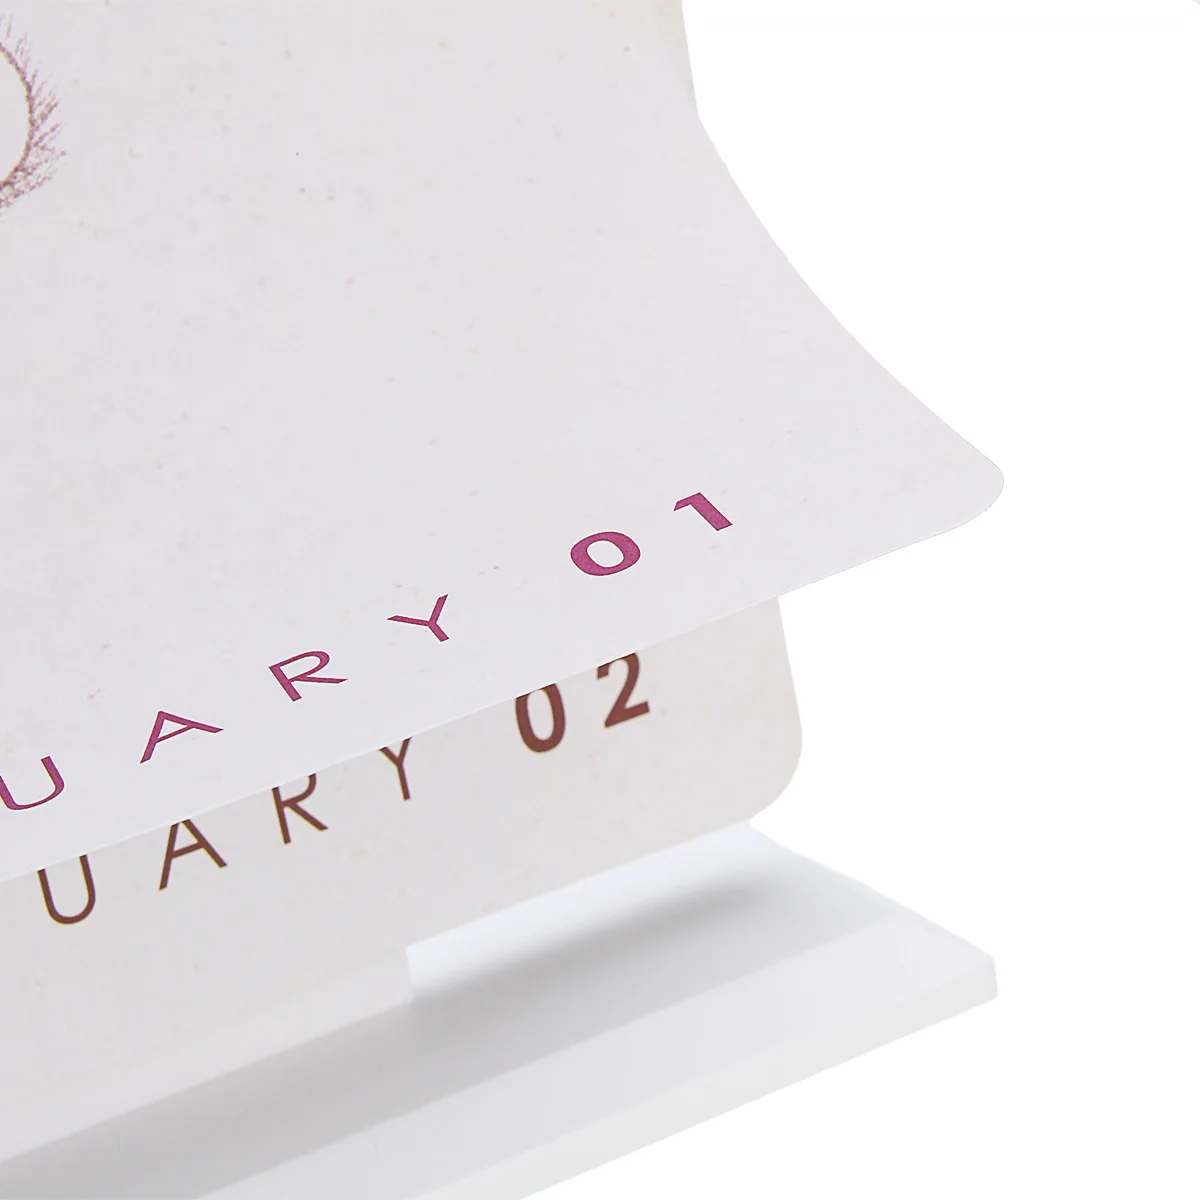 2019 настольный с простым дизайном стоя бумага календарь с заметками ежедневно расписание планировщик стола годовой повестки дня